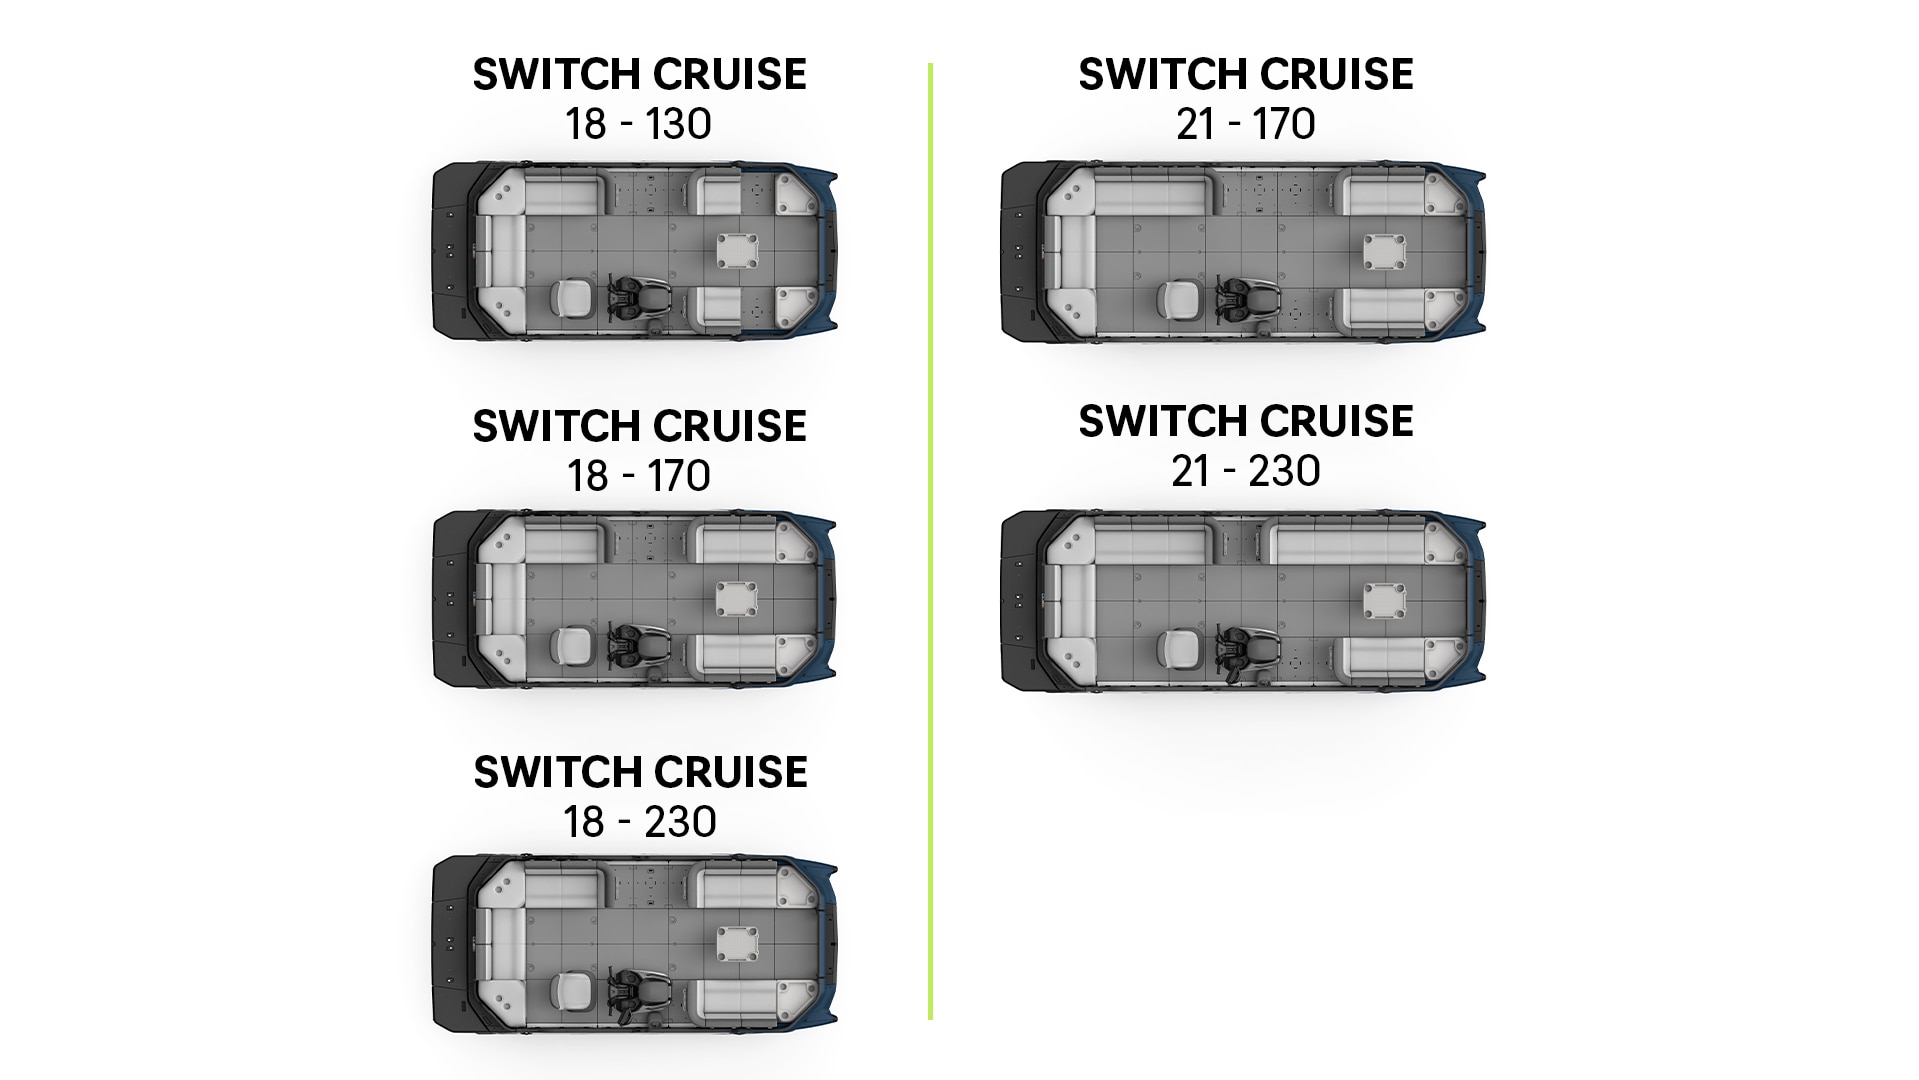 Plan d'aménagement des bateaux pontons Sea-Doo Switch Cruise